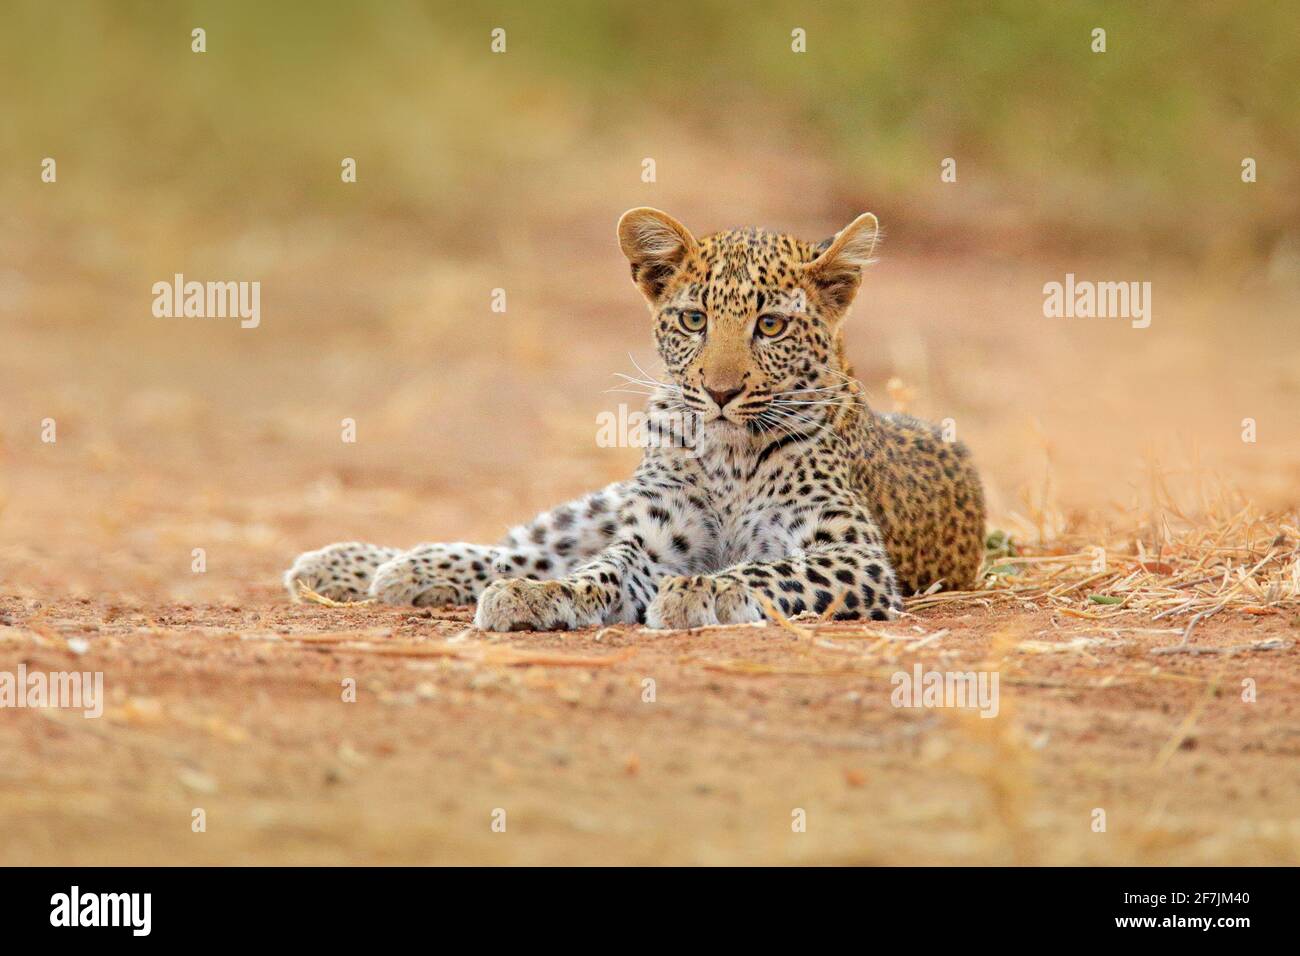 Leopardo africano, Panthera pardus shortidgei, Parco Nazionale di Hwange, Zimbabwe. Wil gatto ritratto nascosto nella bella erba gialla. Grande gatto selvatico nel nat Foto Stock